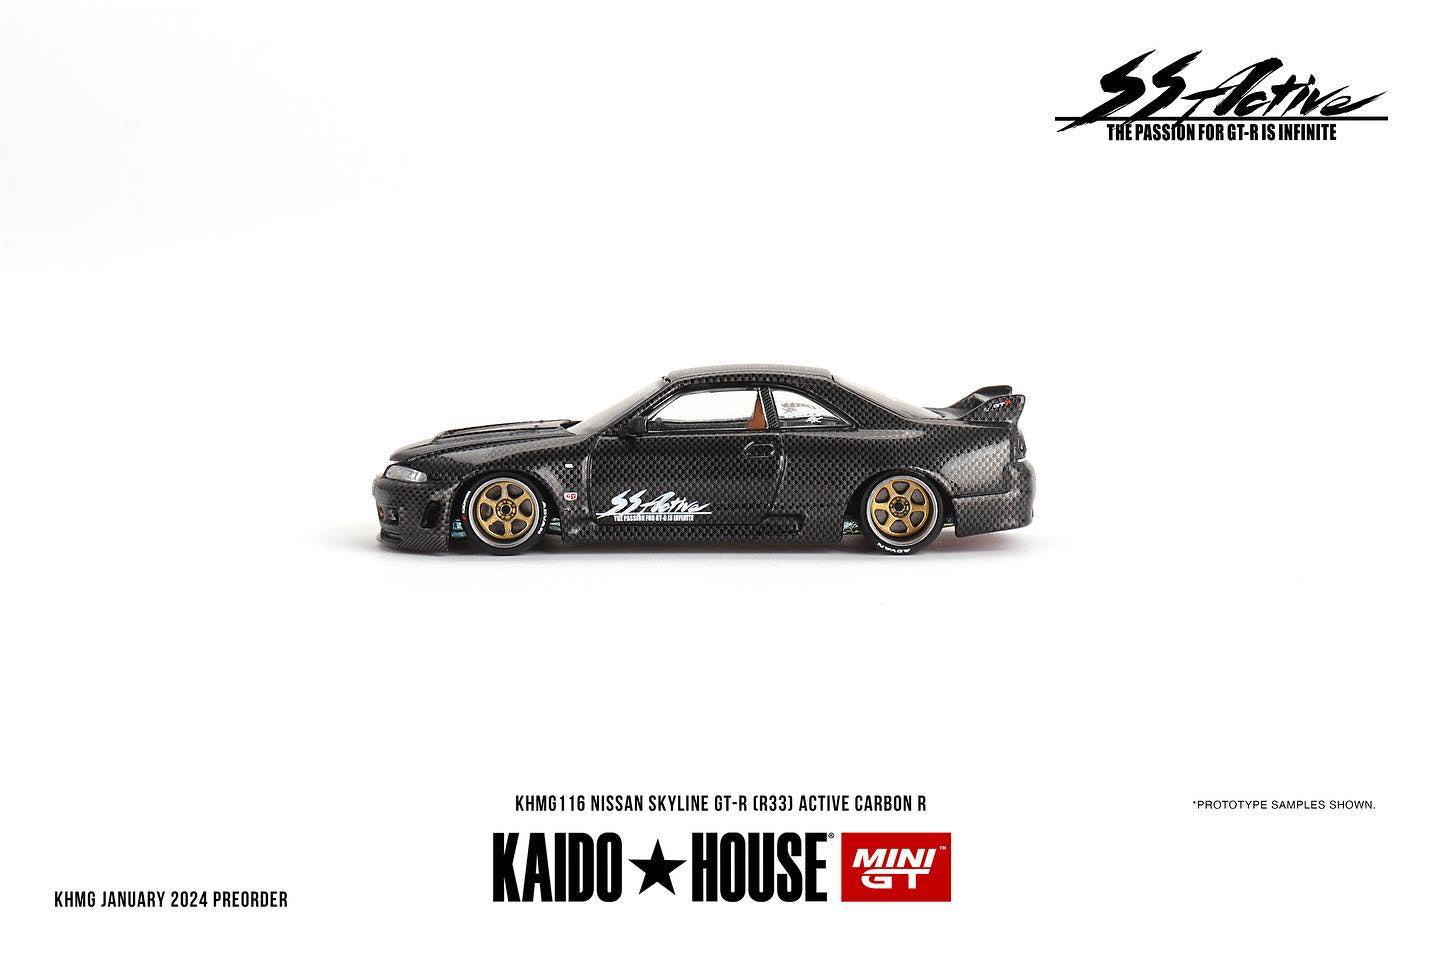 Mini GT x Kaido House Nissan Skyline GT-R (R33) Active Carbon R